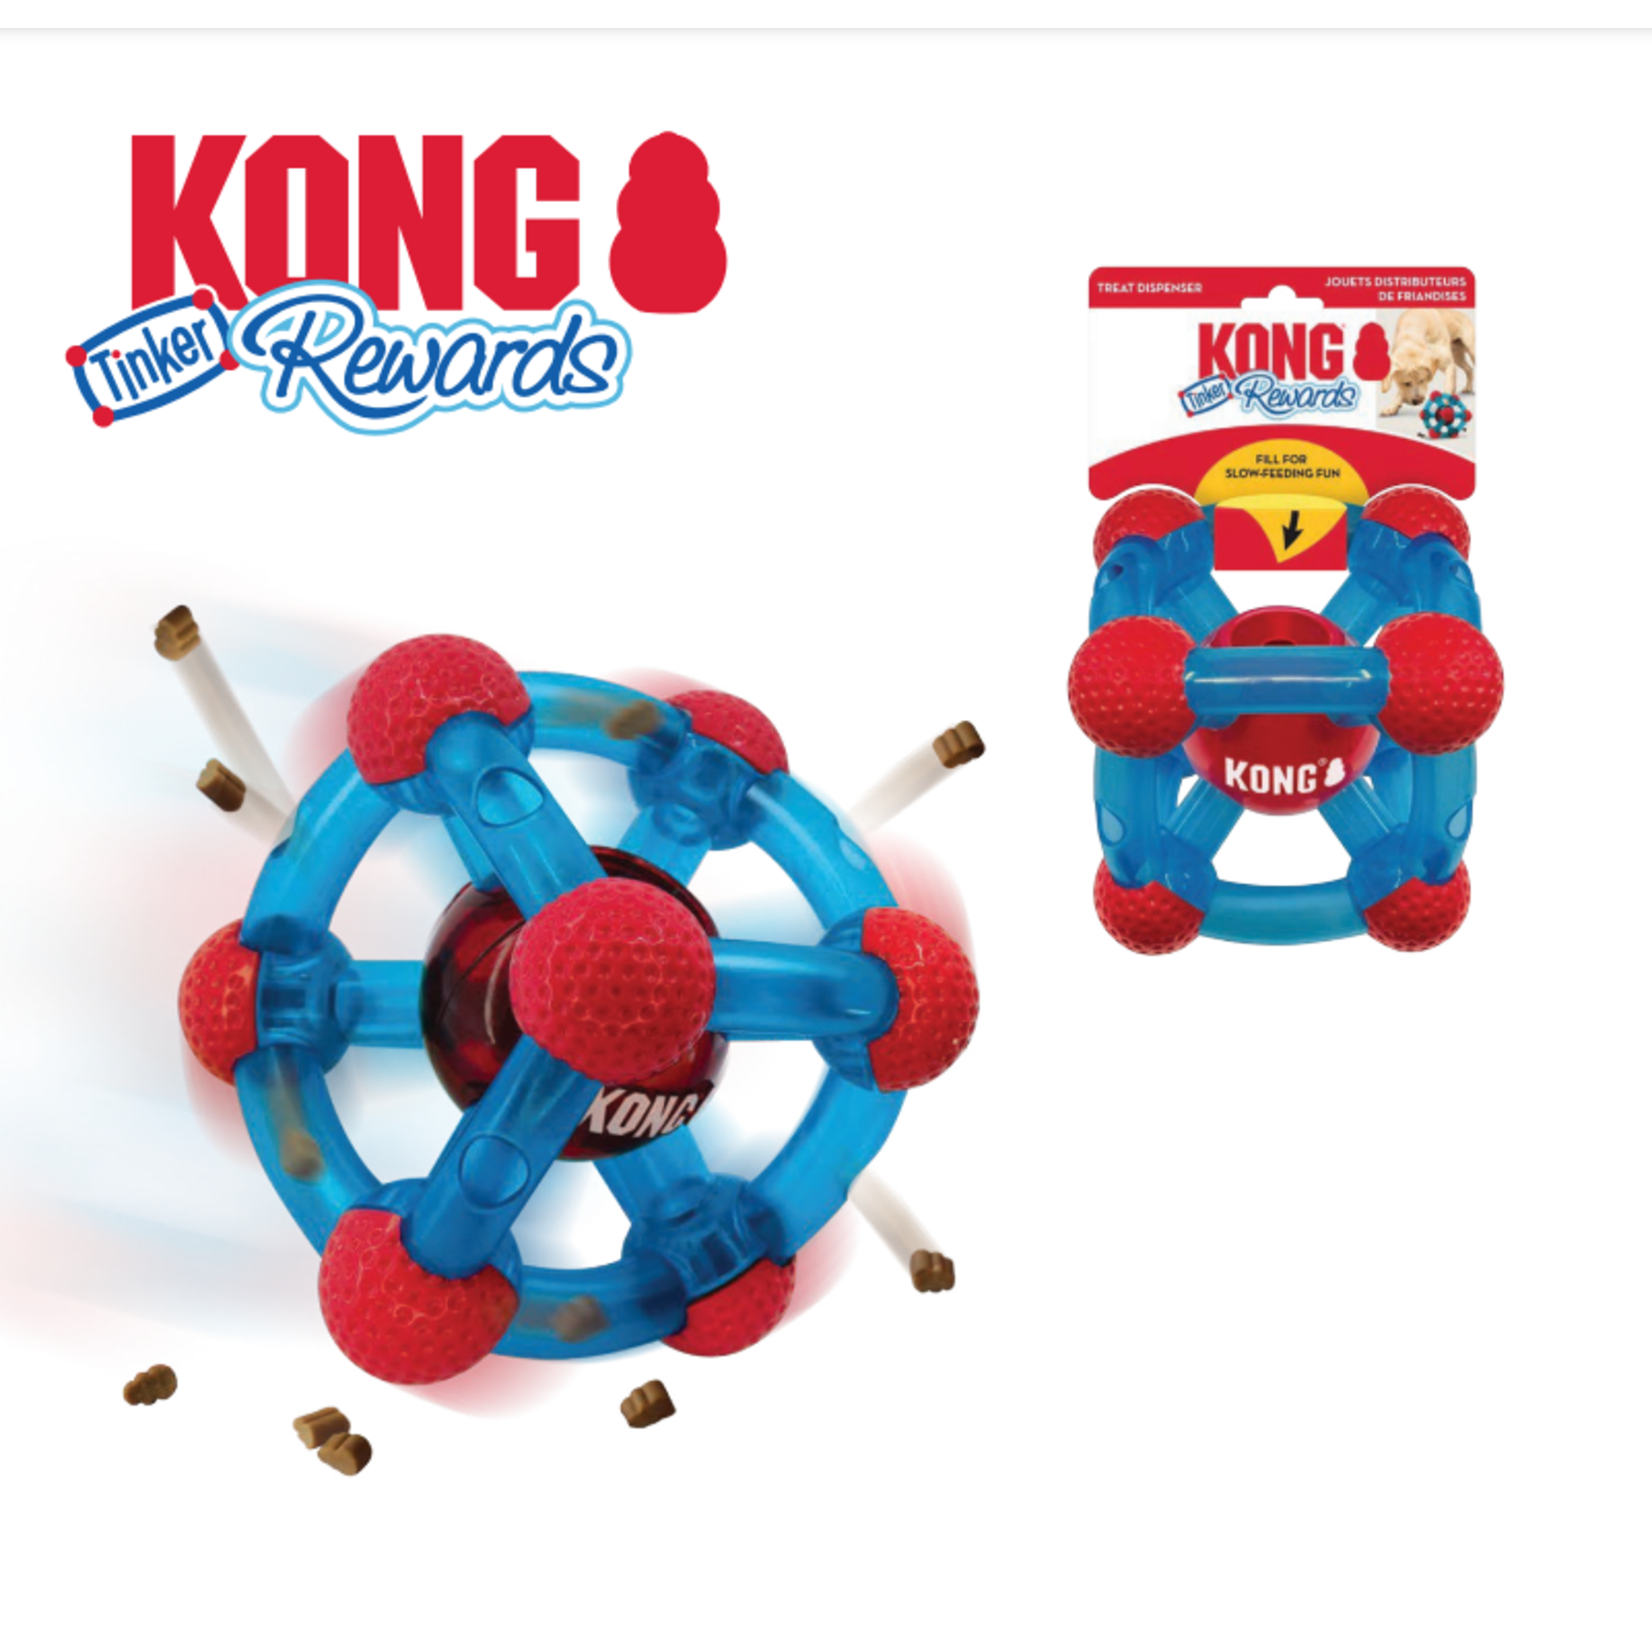 Kong Kong Rewards Treat Dispenser